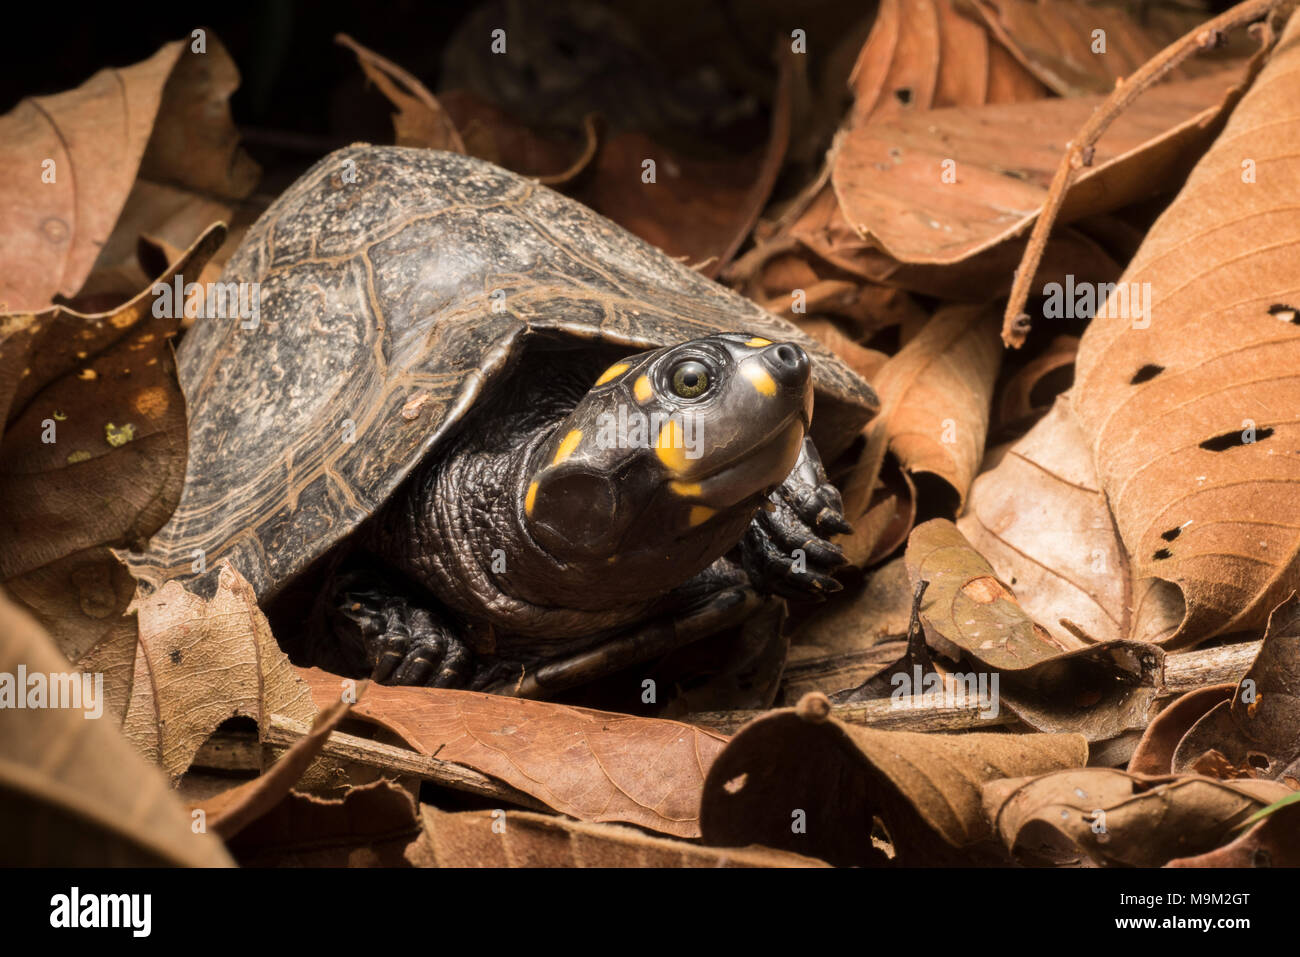 La tartaruga d'acqua dolce minacciata, il sideneck a testa gialla (Podocnemis unifilis), dal Sud America. Foto Stock